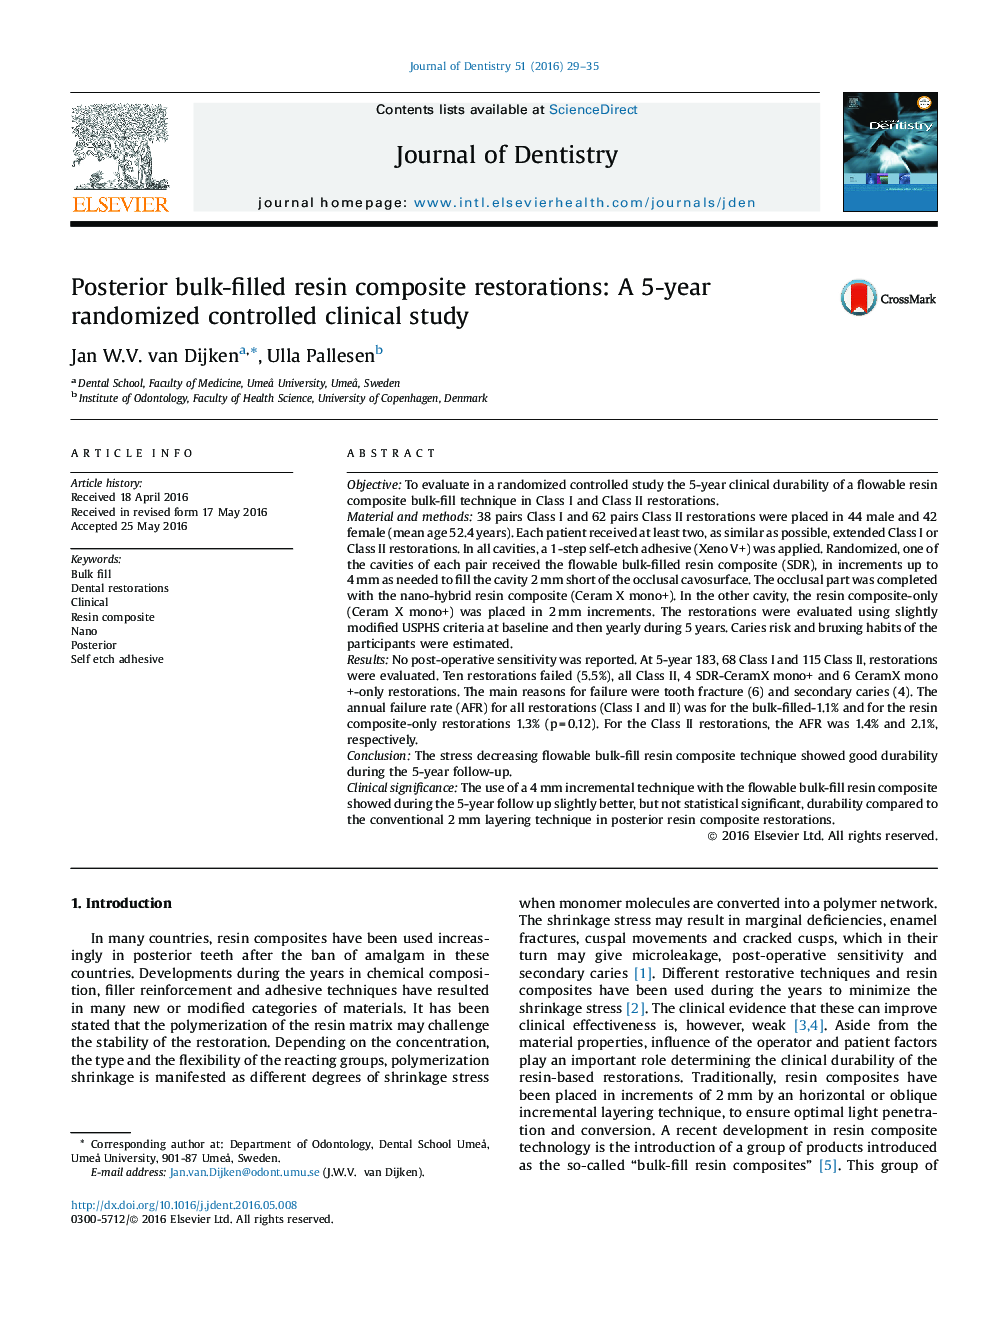 رزین های کامپوزیت رزین پر از رزین پشتی: یک مطالعه بالینی تصادفی کنترل شده 5 ساله 